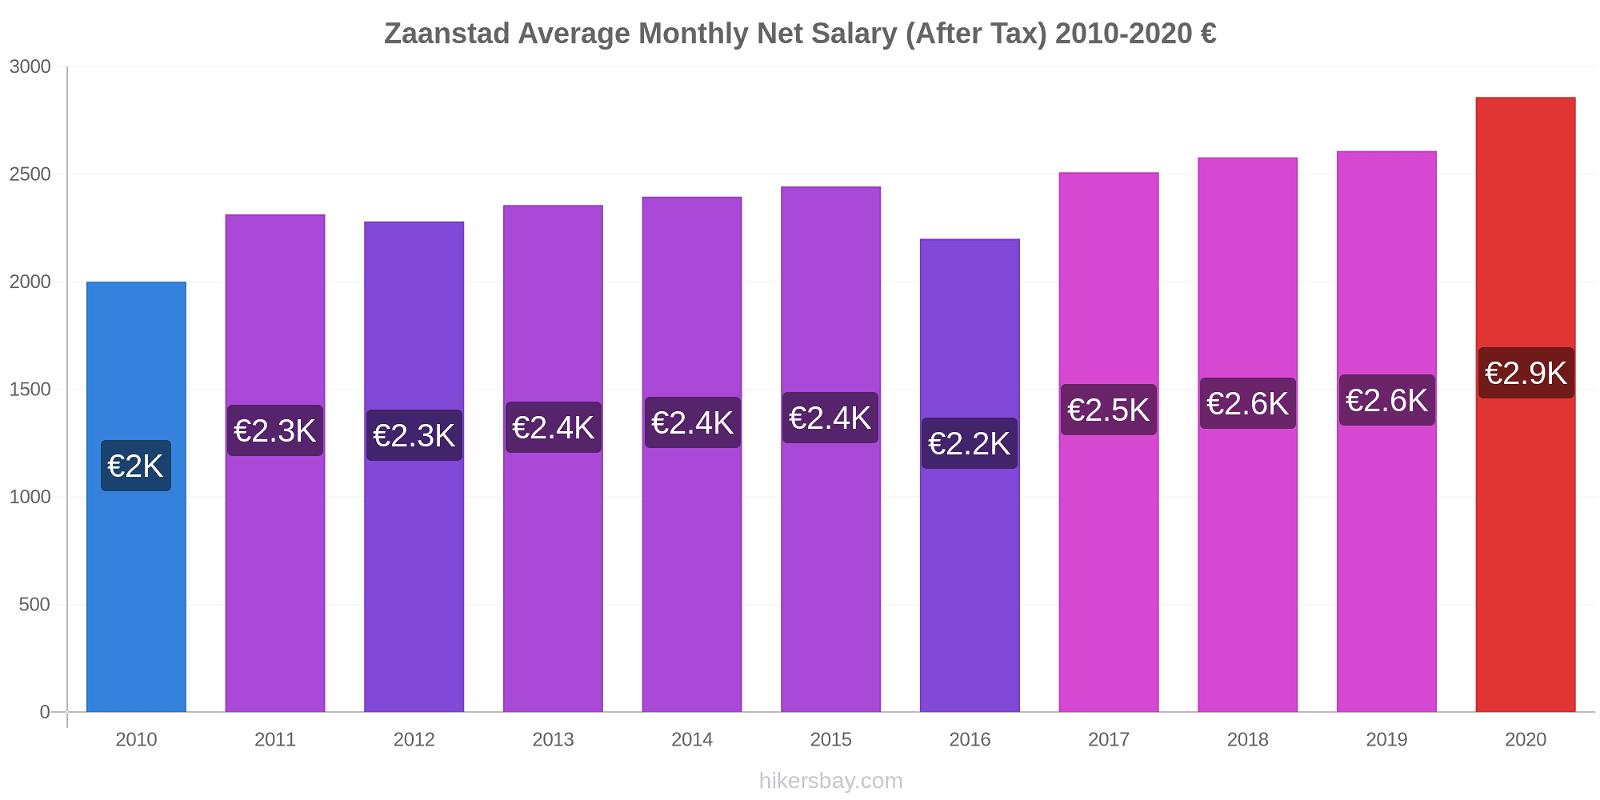 Zaanstad price changes Average Monthly Net Salary (After Tax) hikersbay.com